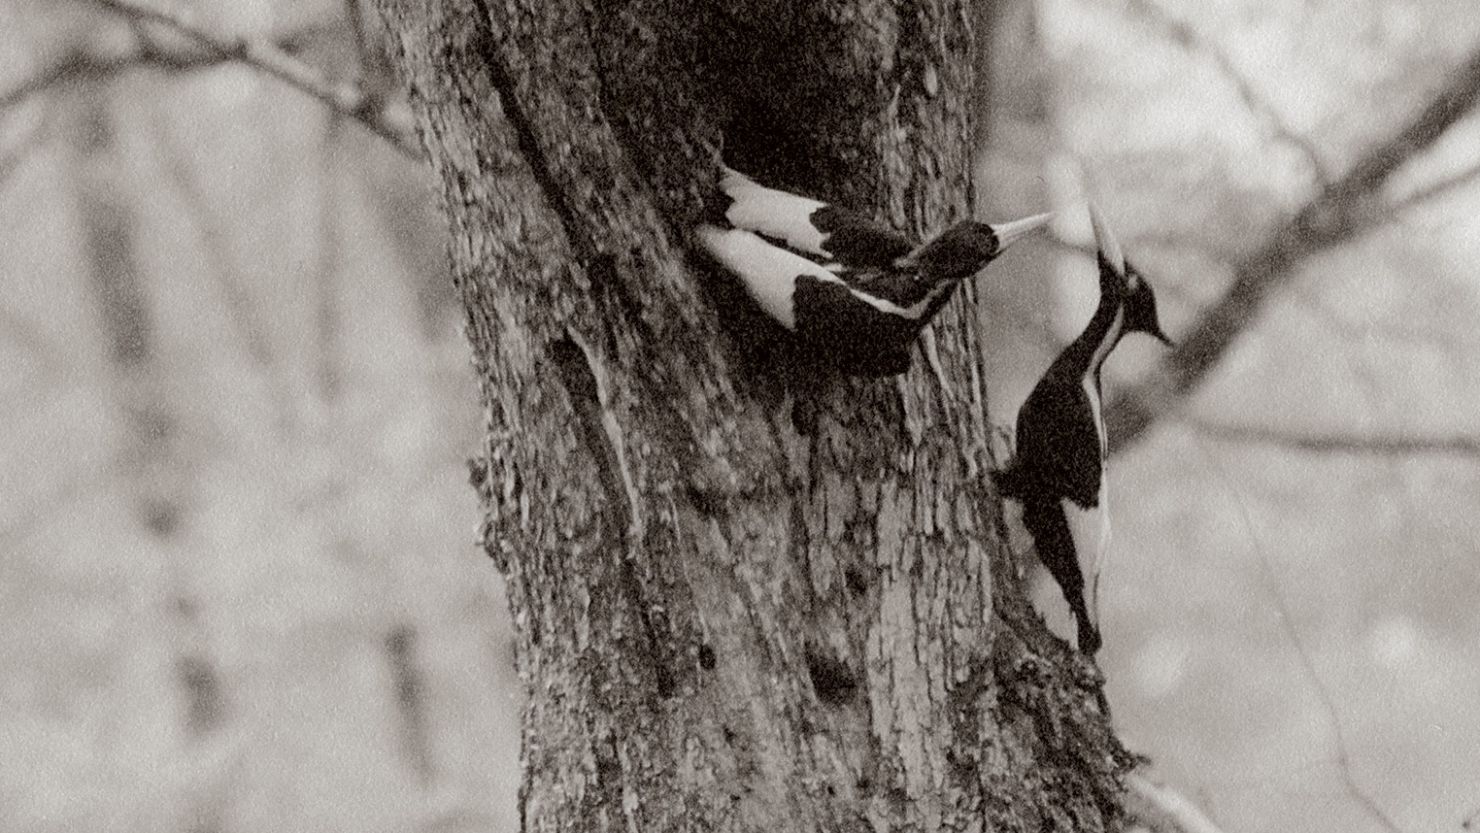 Ivory billed woodpeckers in Louisiana in 1935.